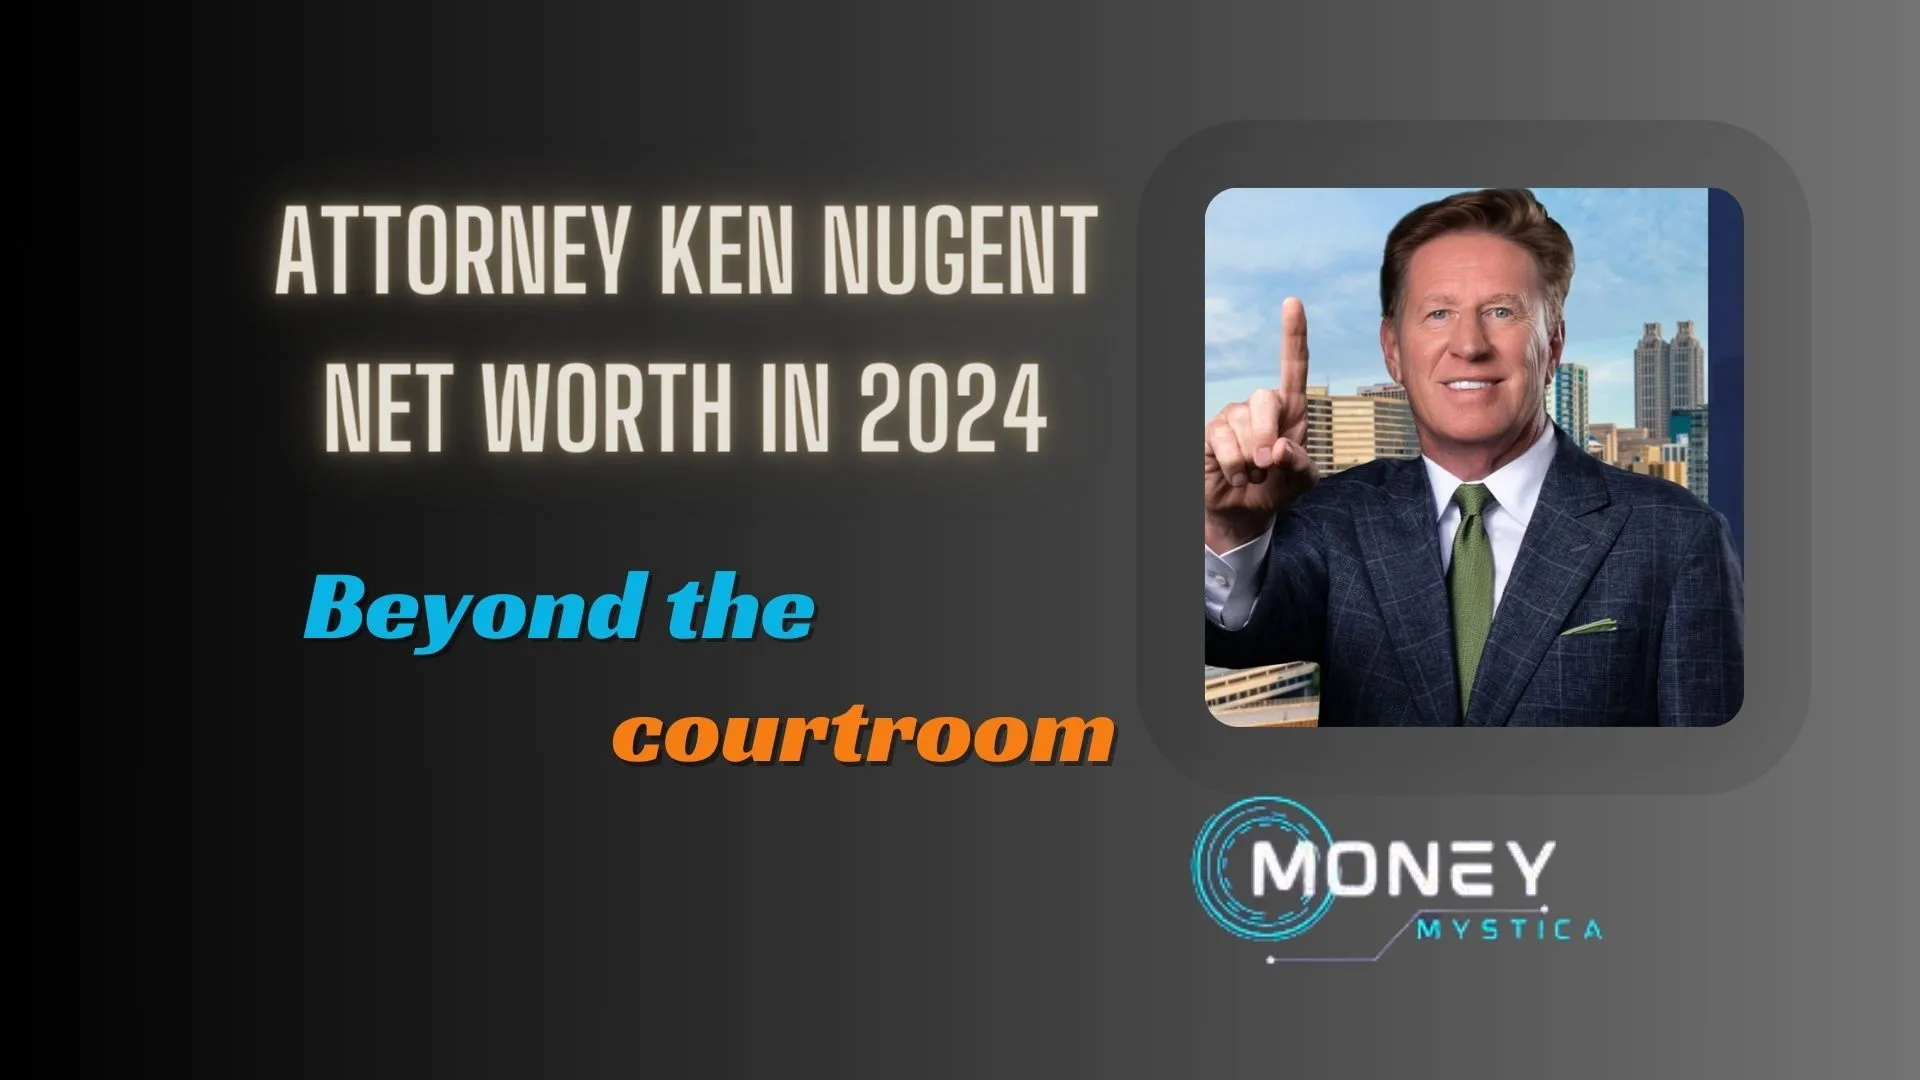 Attorney Ken Nugent Net Worth Growth in 2024